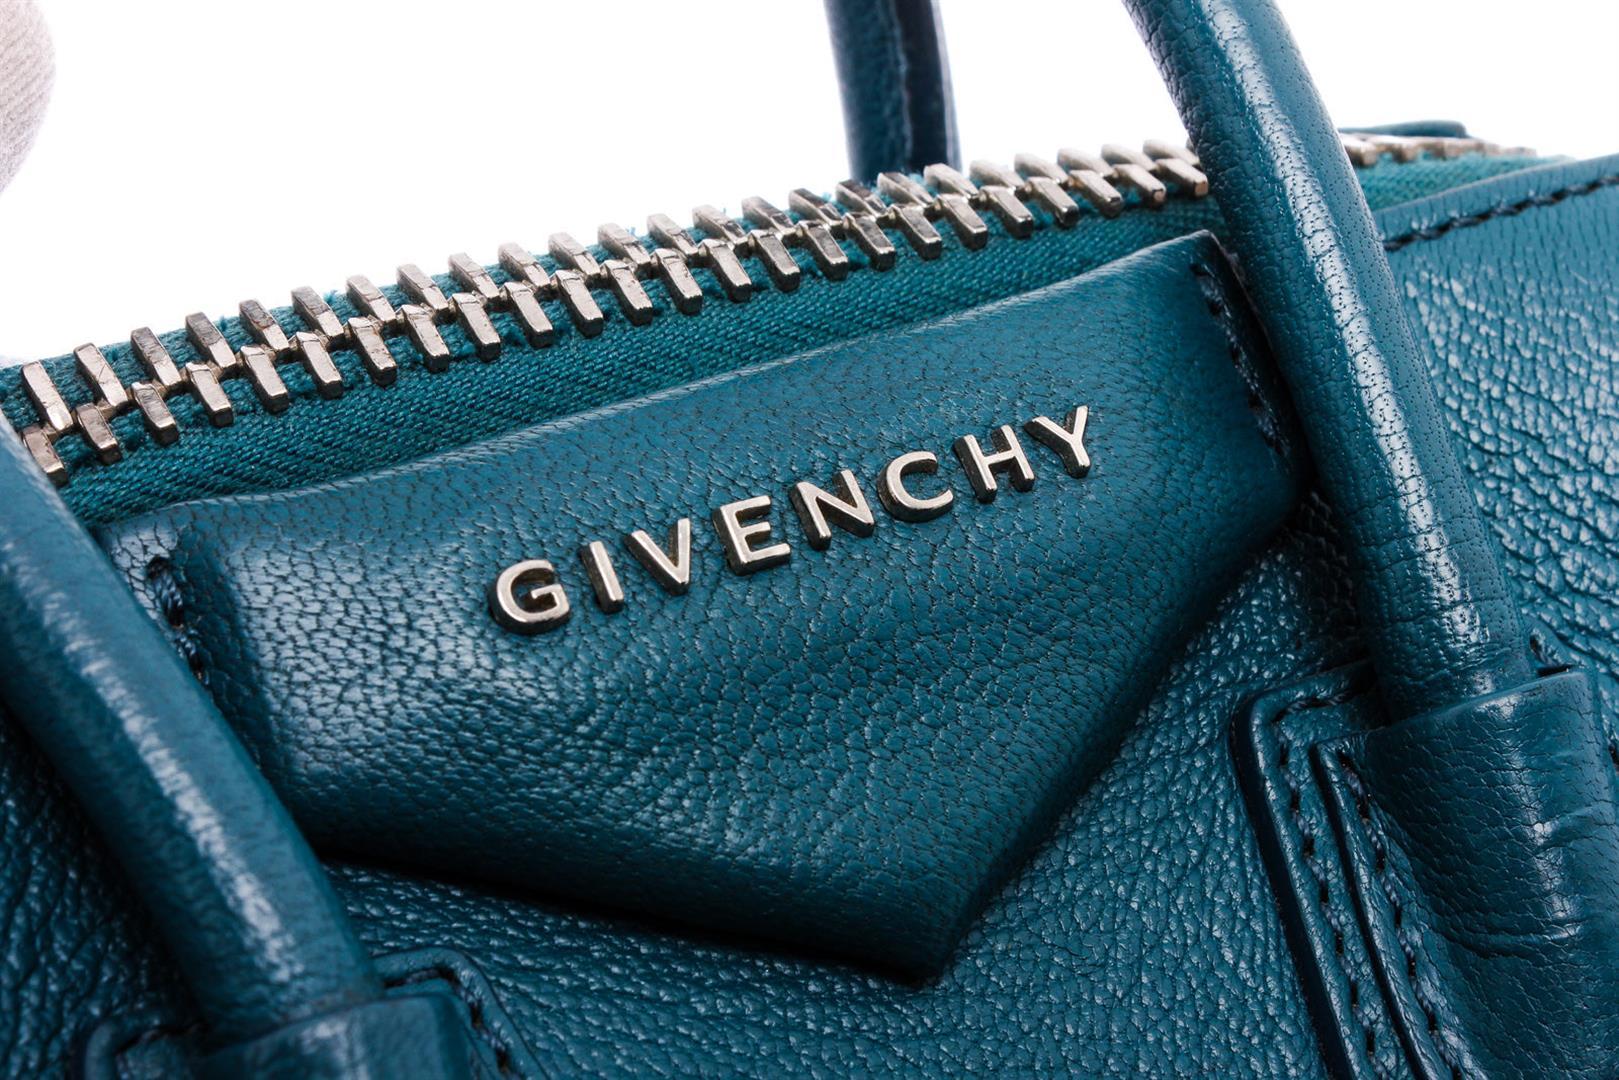 Givenchy Blue Grained Leather Mini Antigona Tote Bag